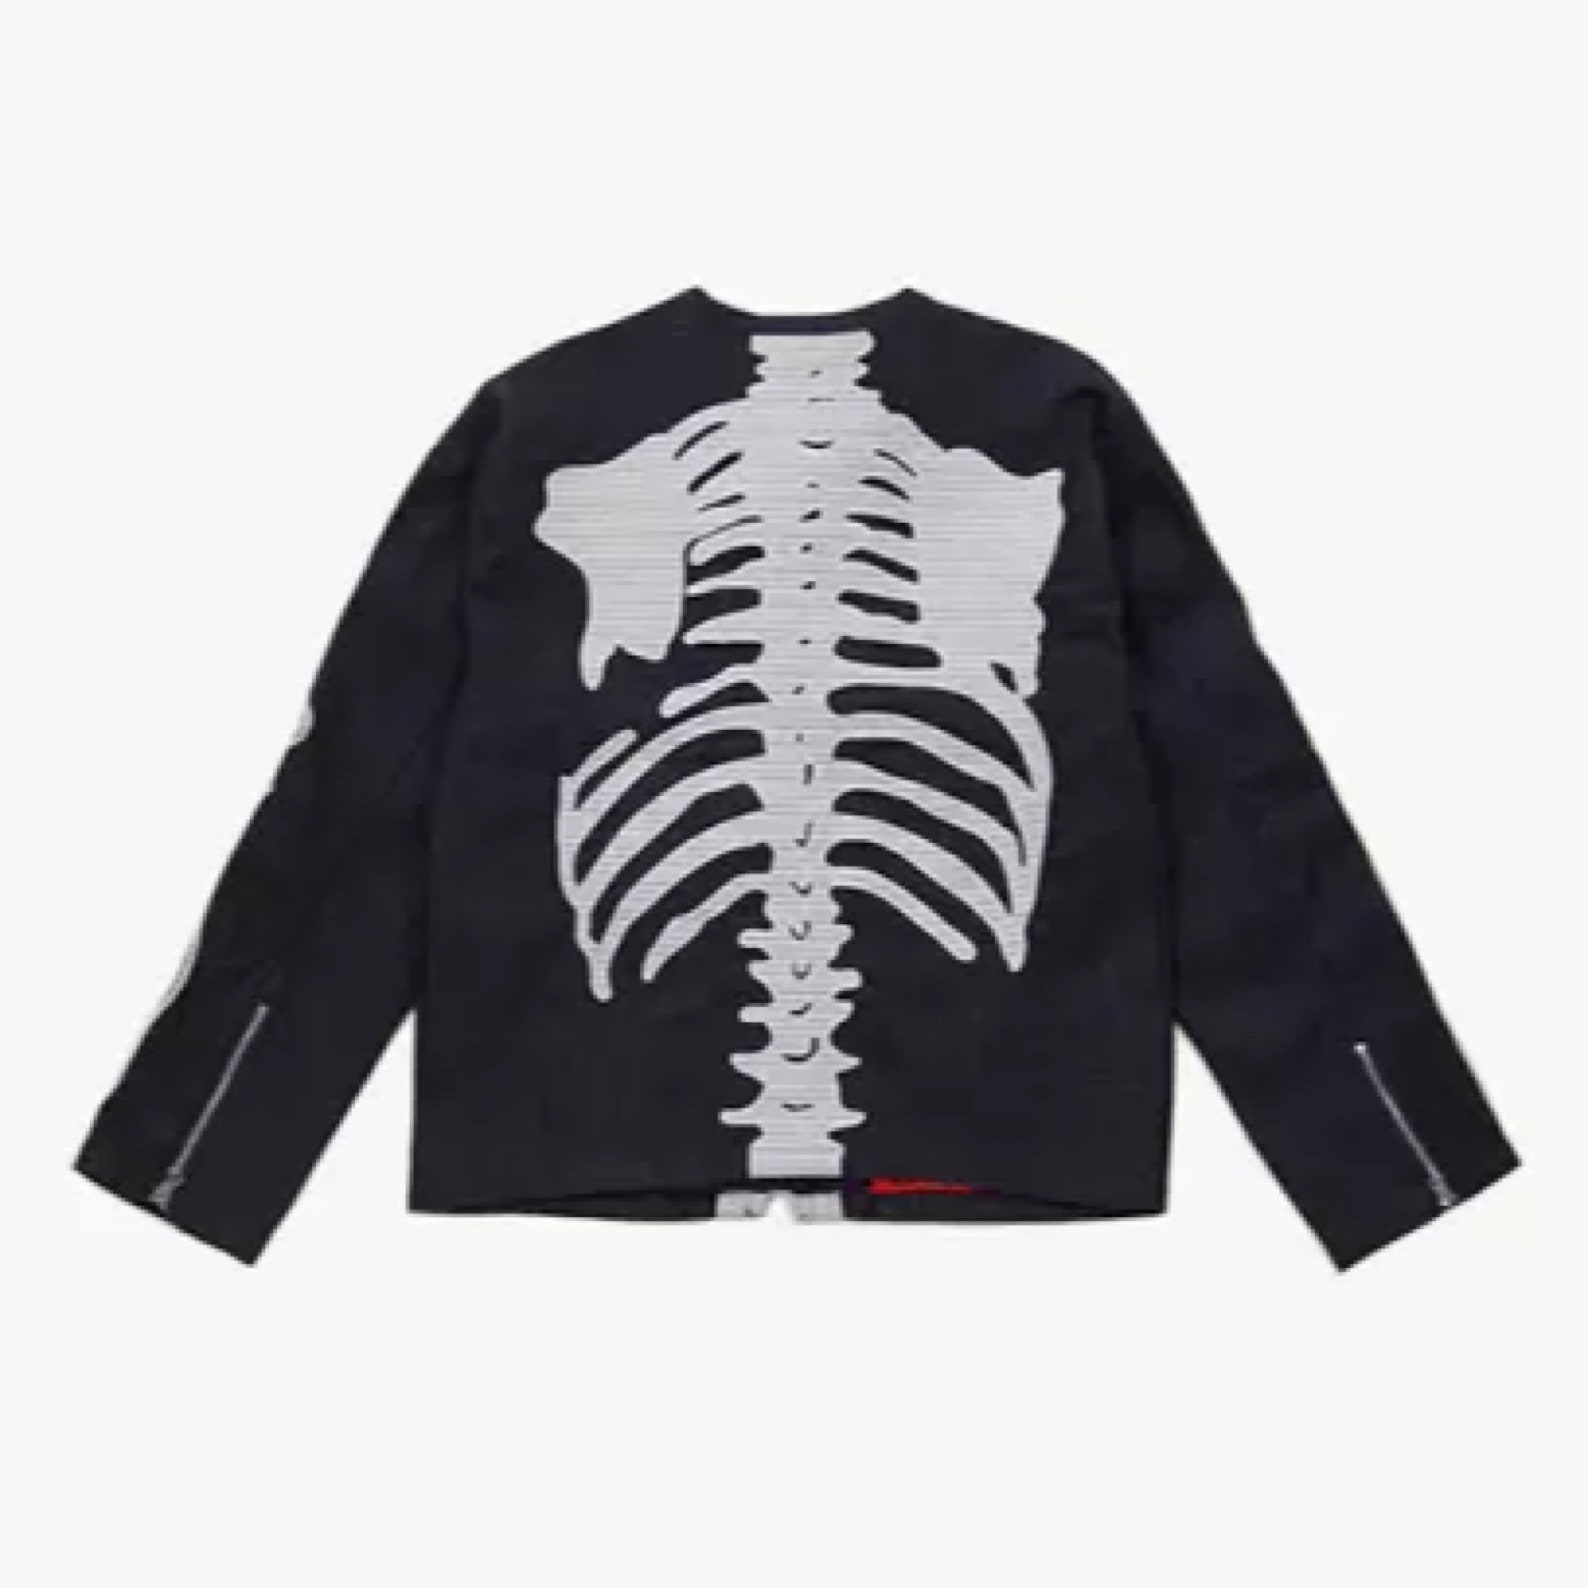 Custom Handmade Skeleton Denim Jean Jacket Kapital Inspired | Etsy